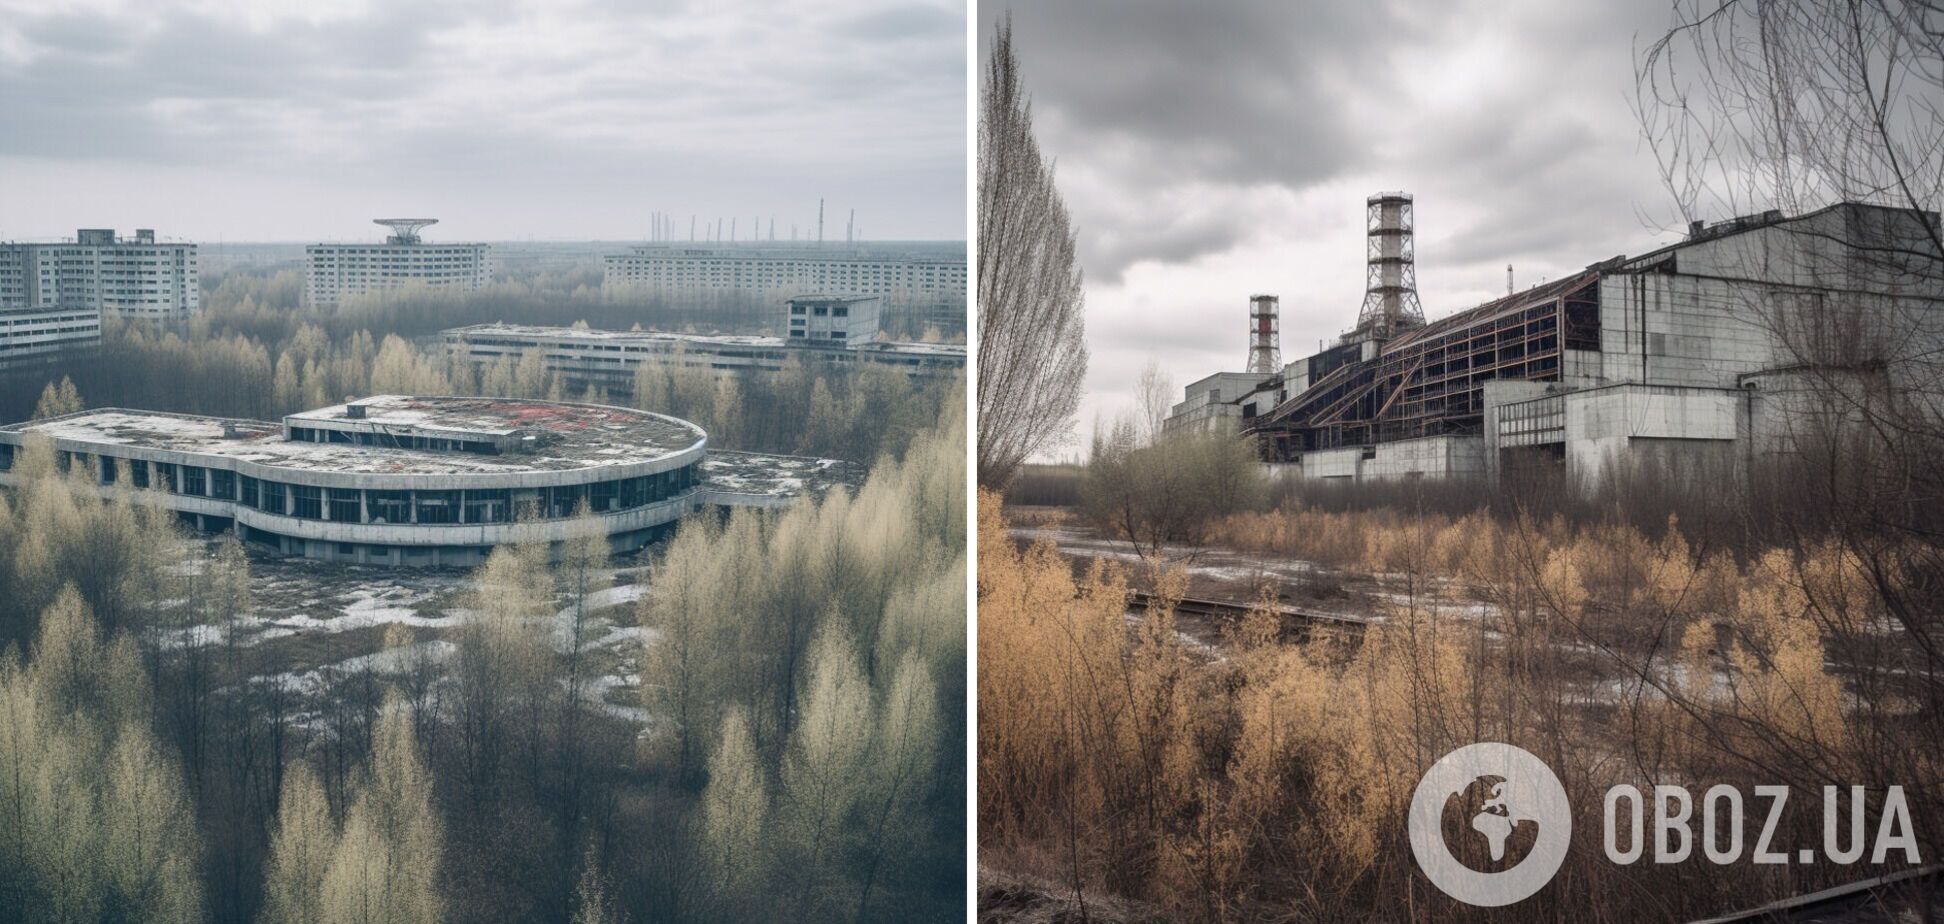 Годовщина Чернобыльской катастрофы: история и количество жертв трагедии, всколыхнувшей весь мир